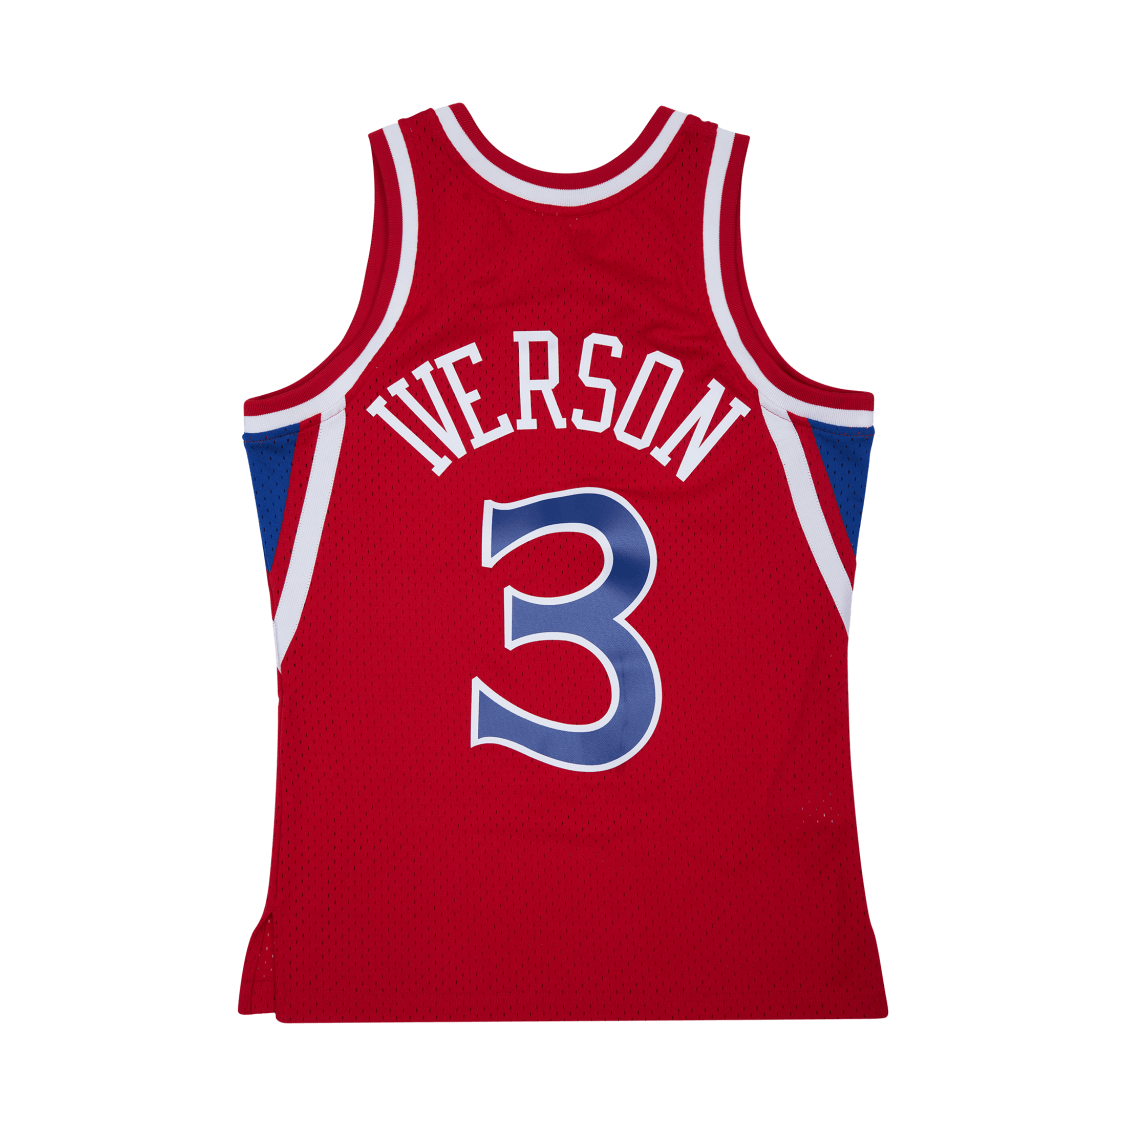 76ers Swingman Jersey - Allen Iverson